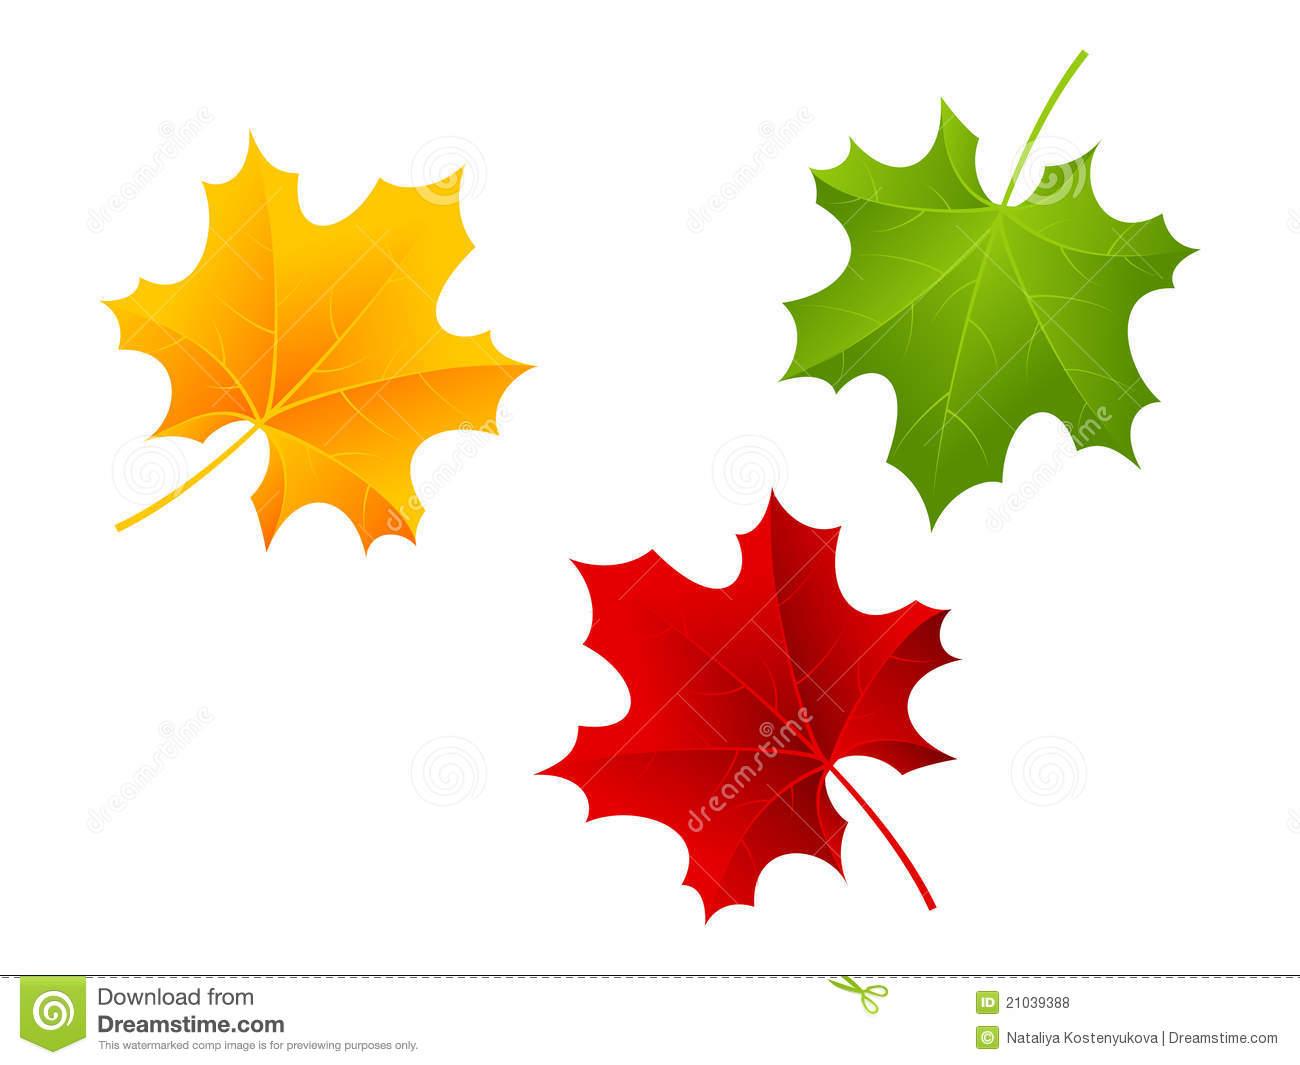 Листья клена желтые и красные. Листья красные желтые зеленые. Листики красные и желтые. Осенние листочки красные желтые зеленые. Красный желтый зеленый кленовые листья.